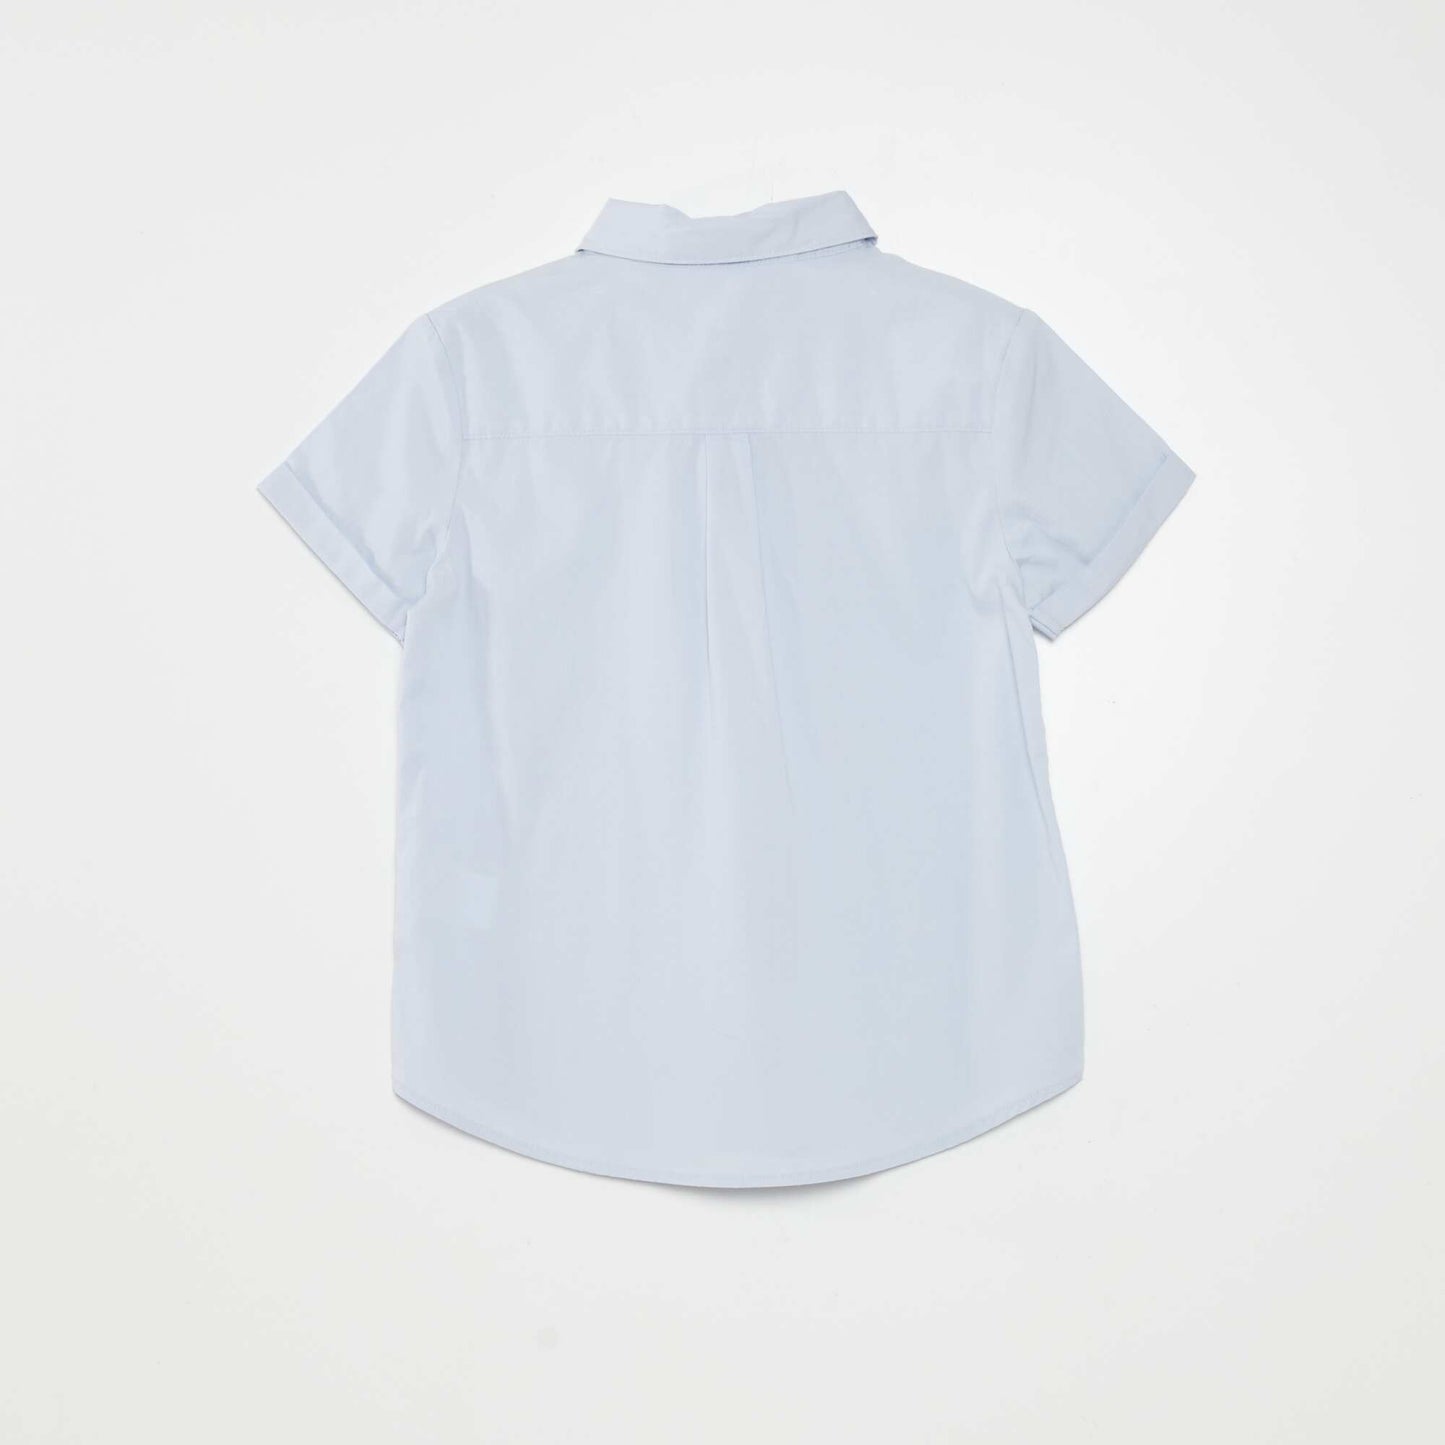 Ensemble chemise en coton + chemise - 2 pièces Bleu